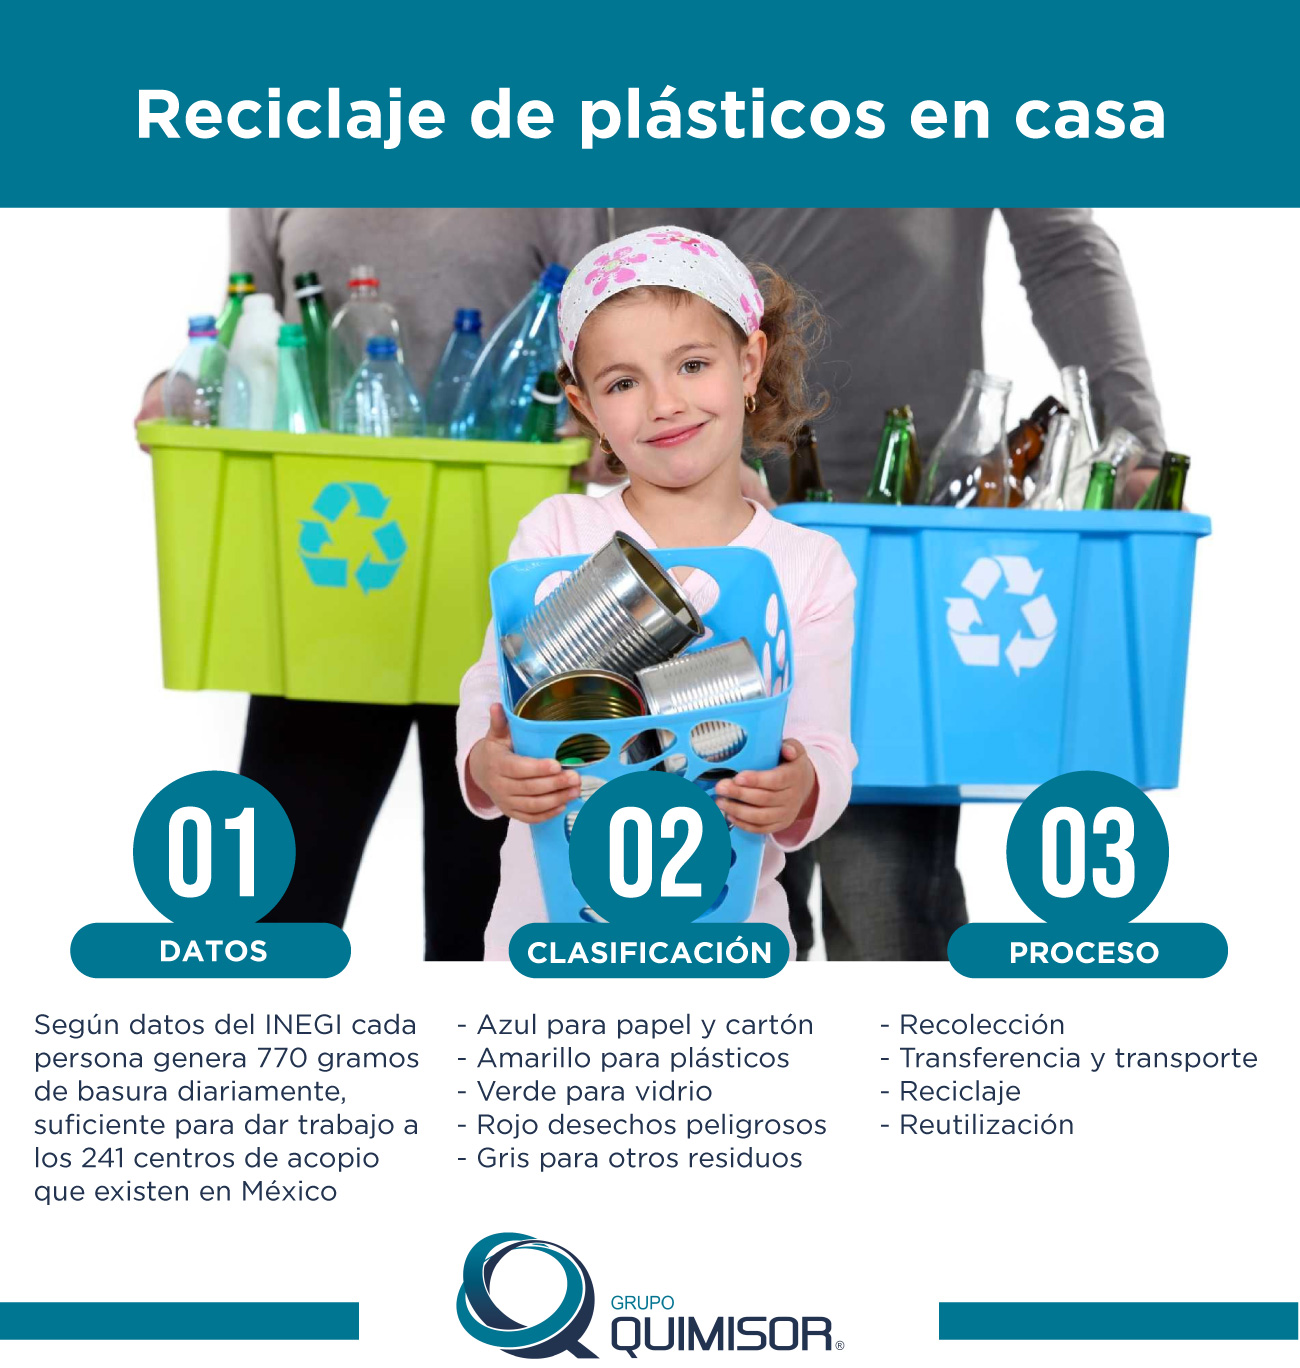 Reciclaje de plásticos en casa: cómo podemos ayudar - QUIMISOR